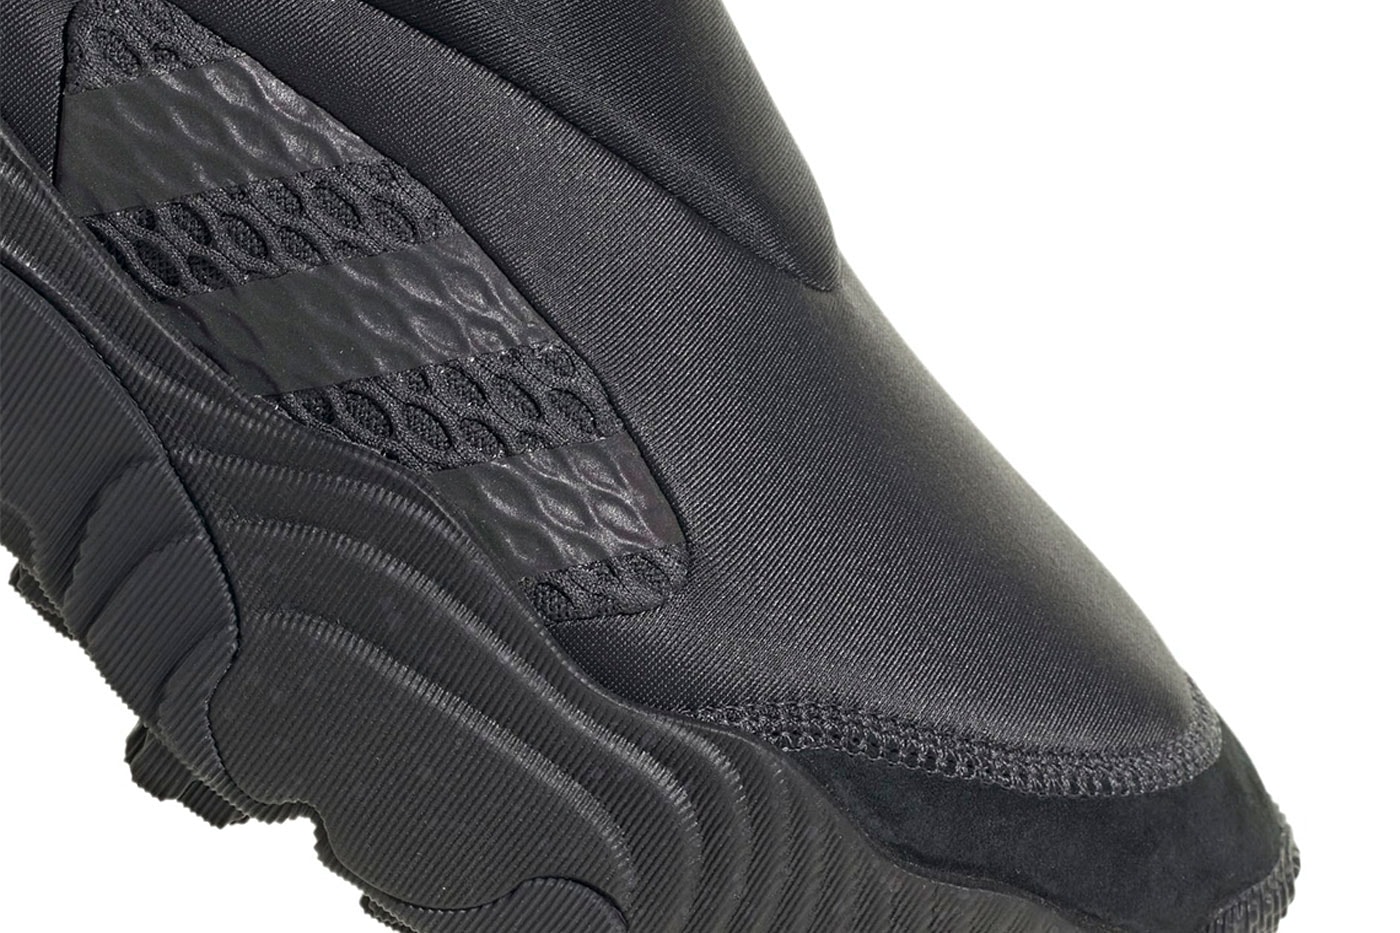 adidas 最新套穿式鞋款 Rovermule Adventure「Triple Black」發售情報正式公開